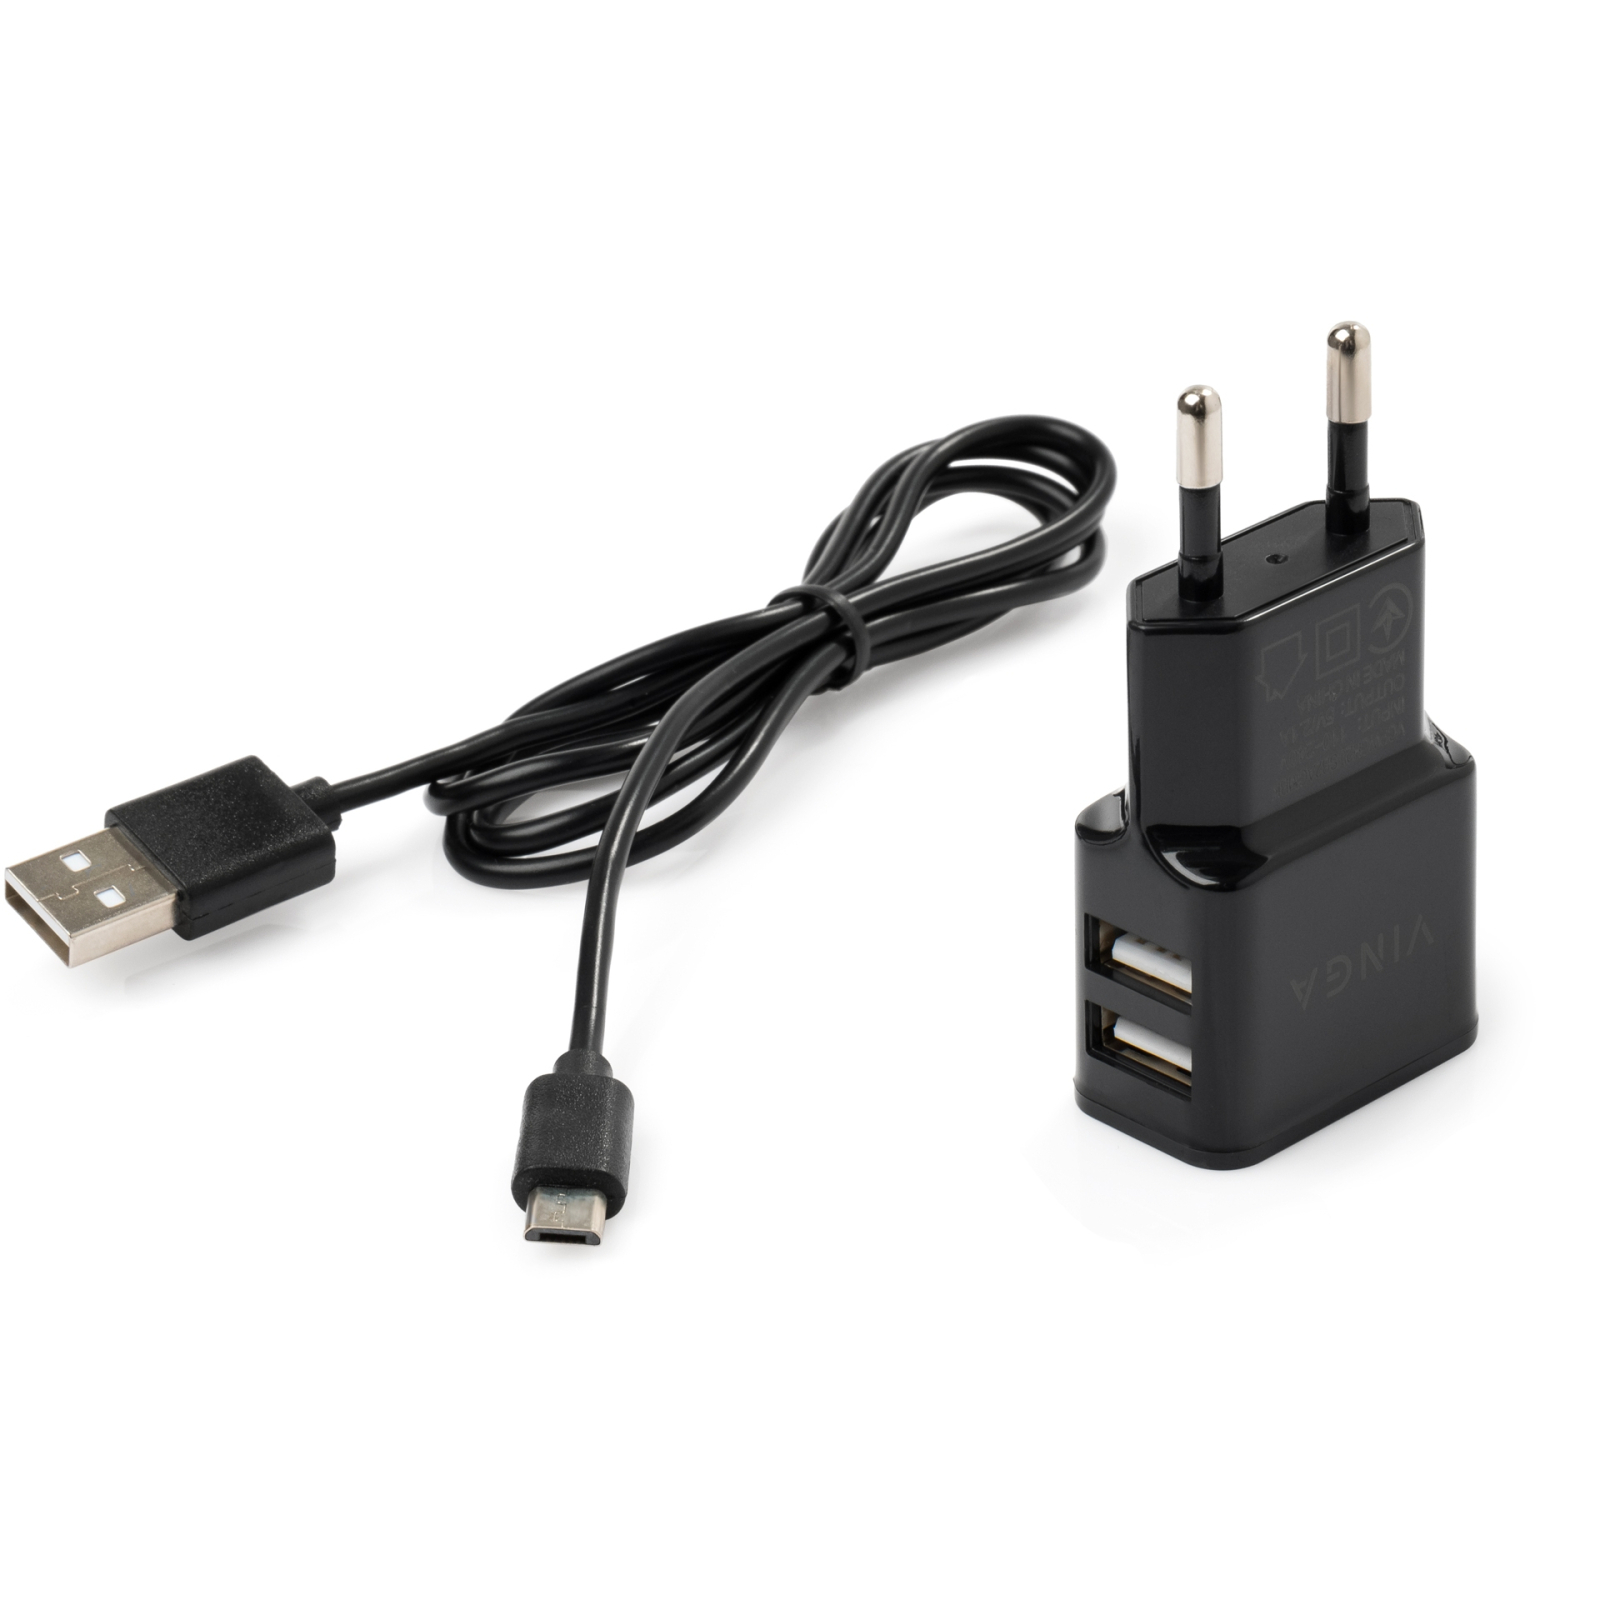 Зарядное устройство Vinga 2 Port USB Wall Charger 2.1A + microUSB cable (VCPWCH2USB2ACMBK) изображение 2